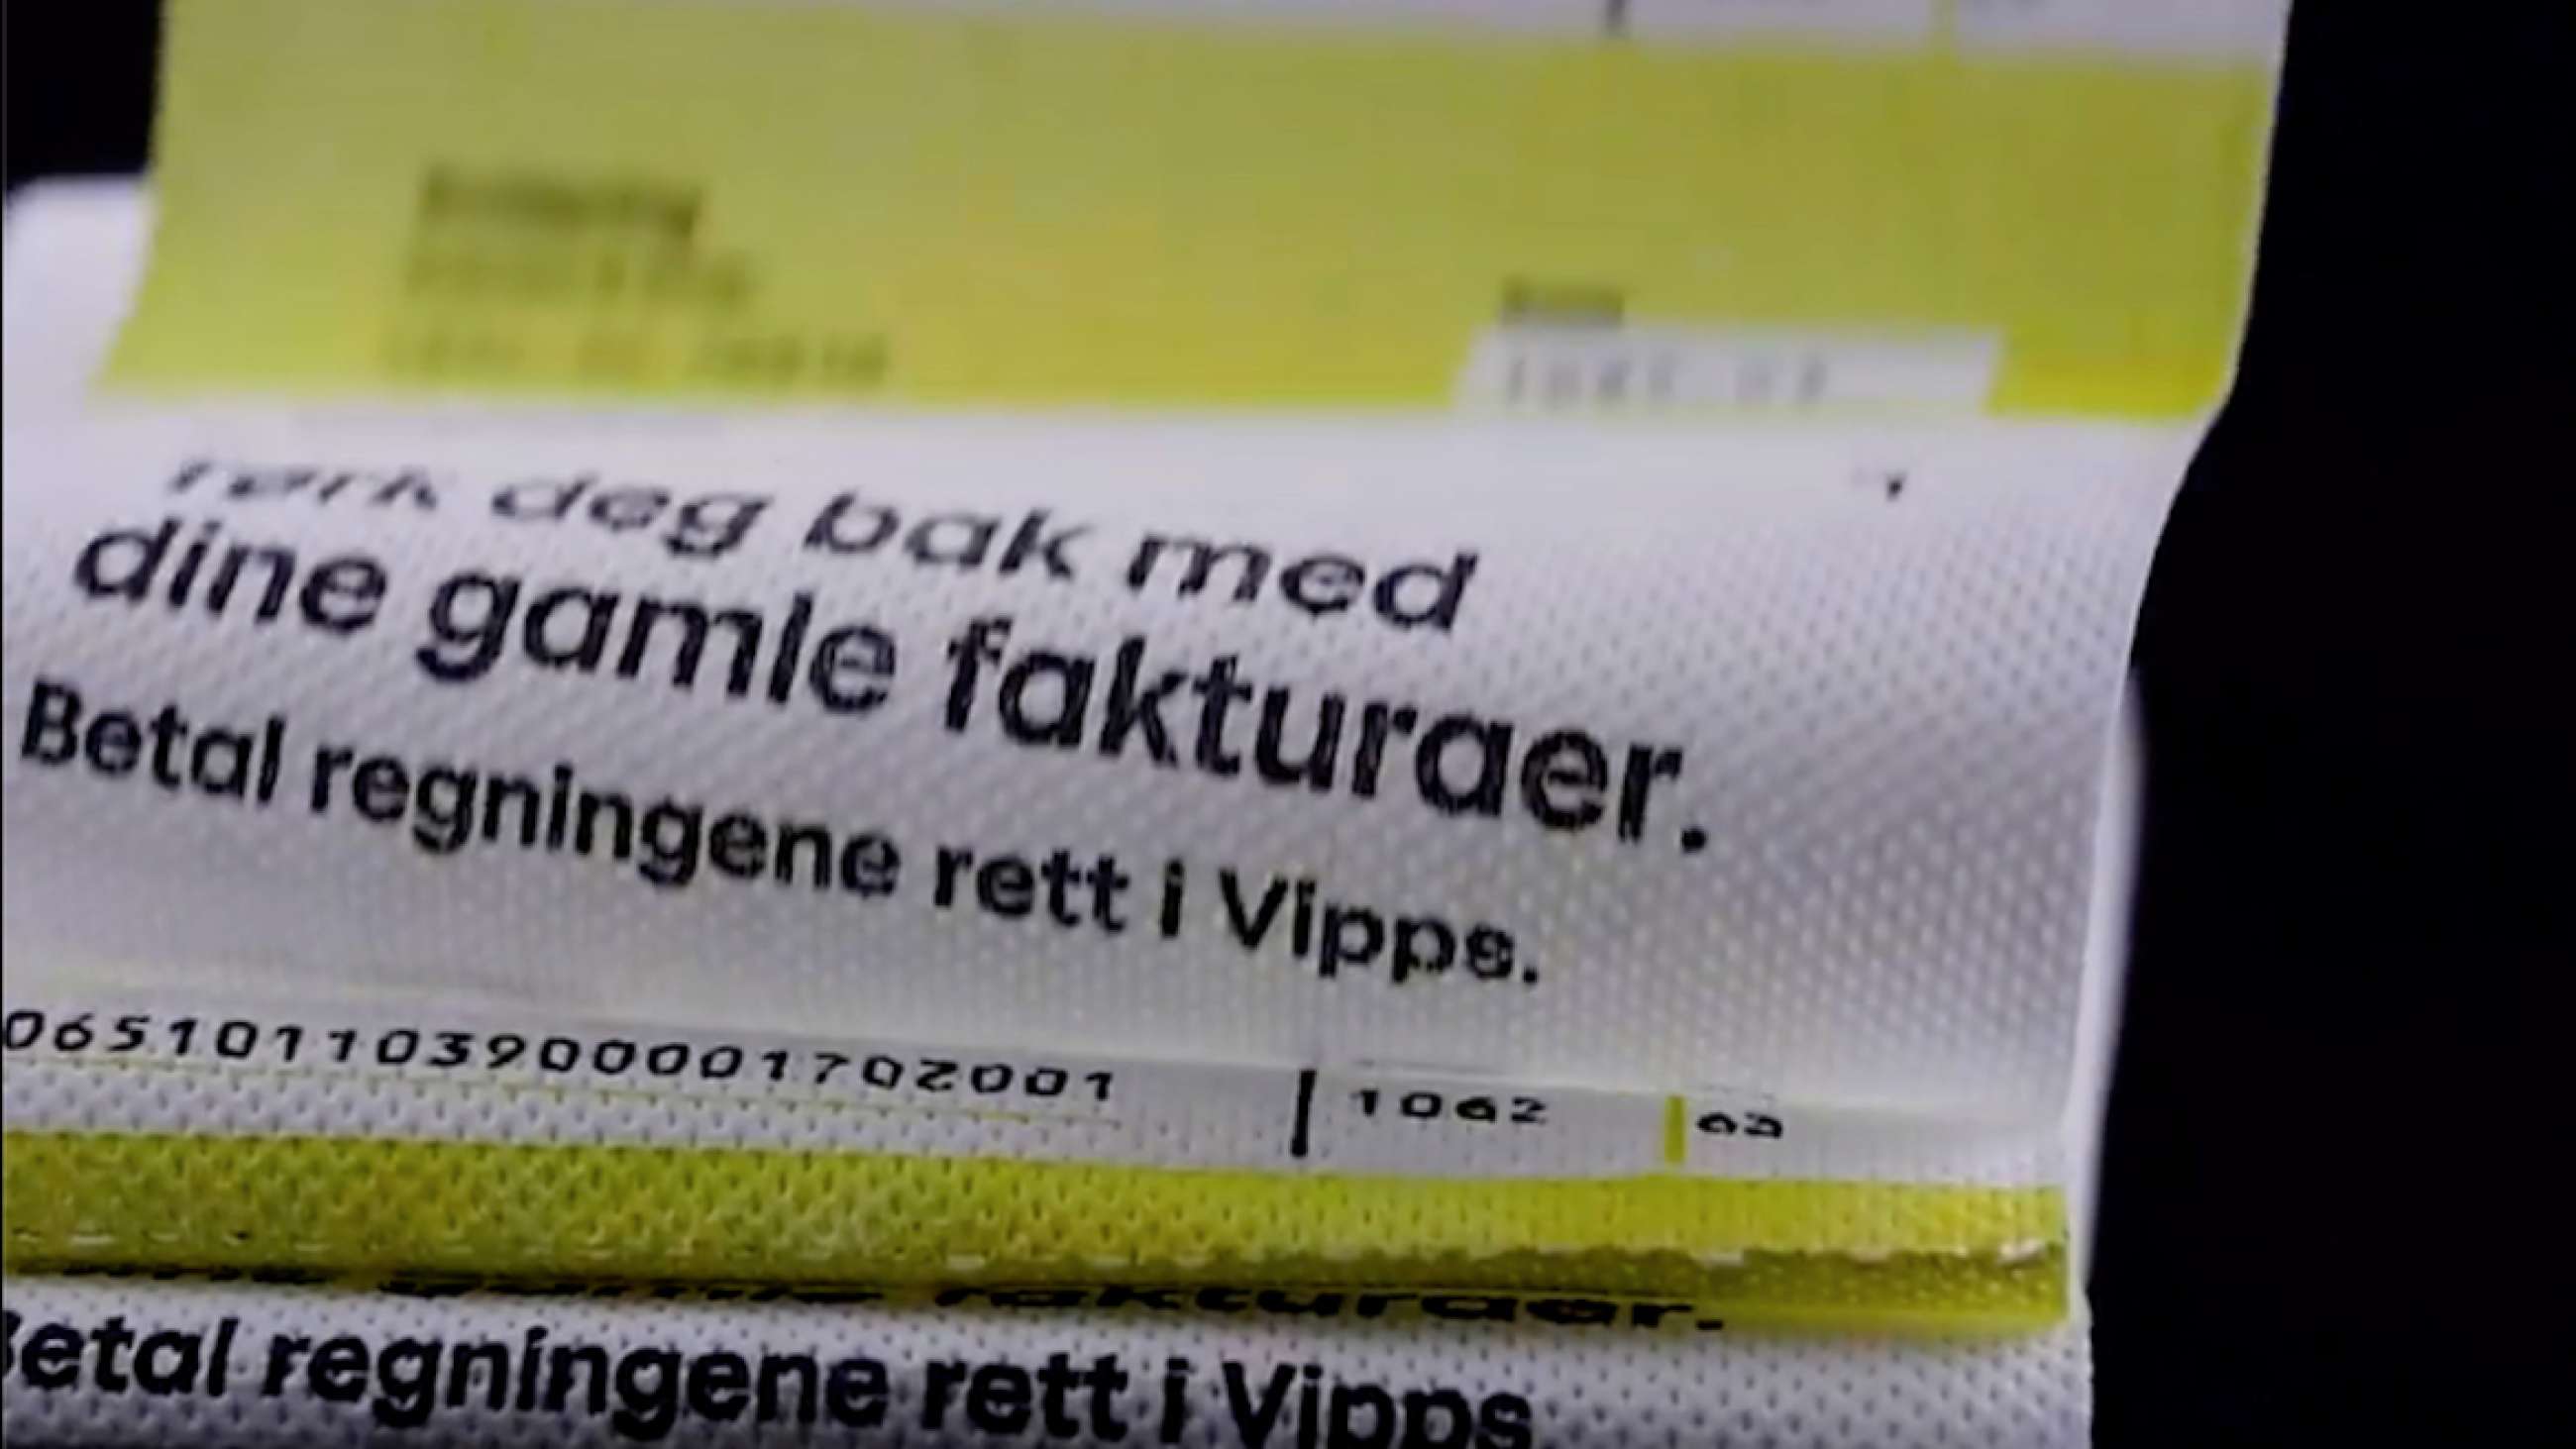 Nærbilde av dorullen med fakturamønster. På regningen står det "Tørk deg bak med din gamle faktura. Betal regningene rett i Vipps".